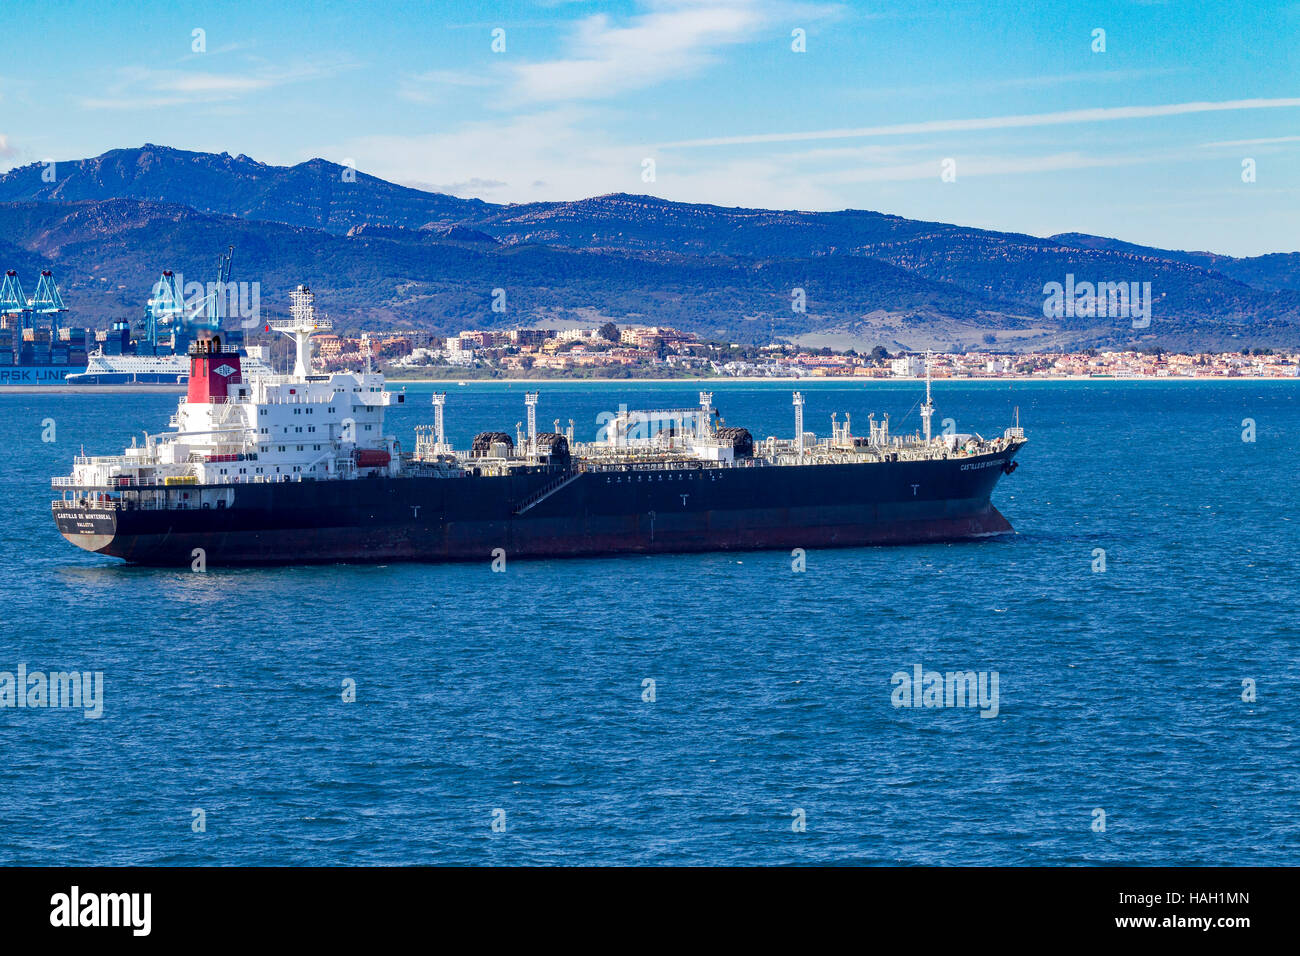 Castillo de Monterreal,  OIL/CHEMICAL, tanker of Gibraltar. Stock Photo